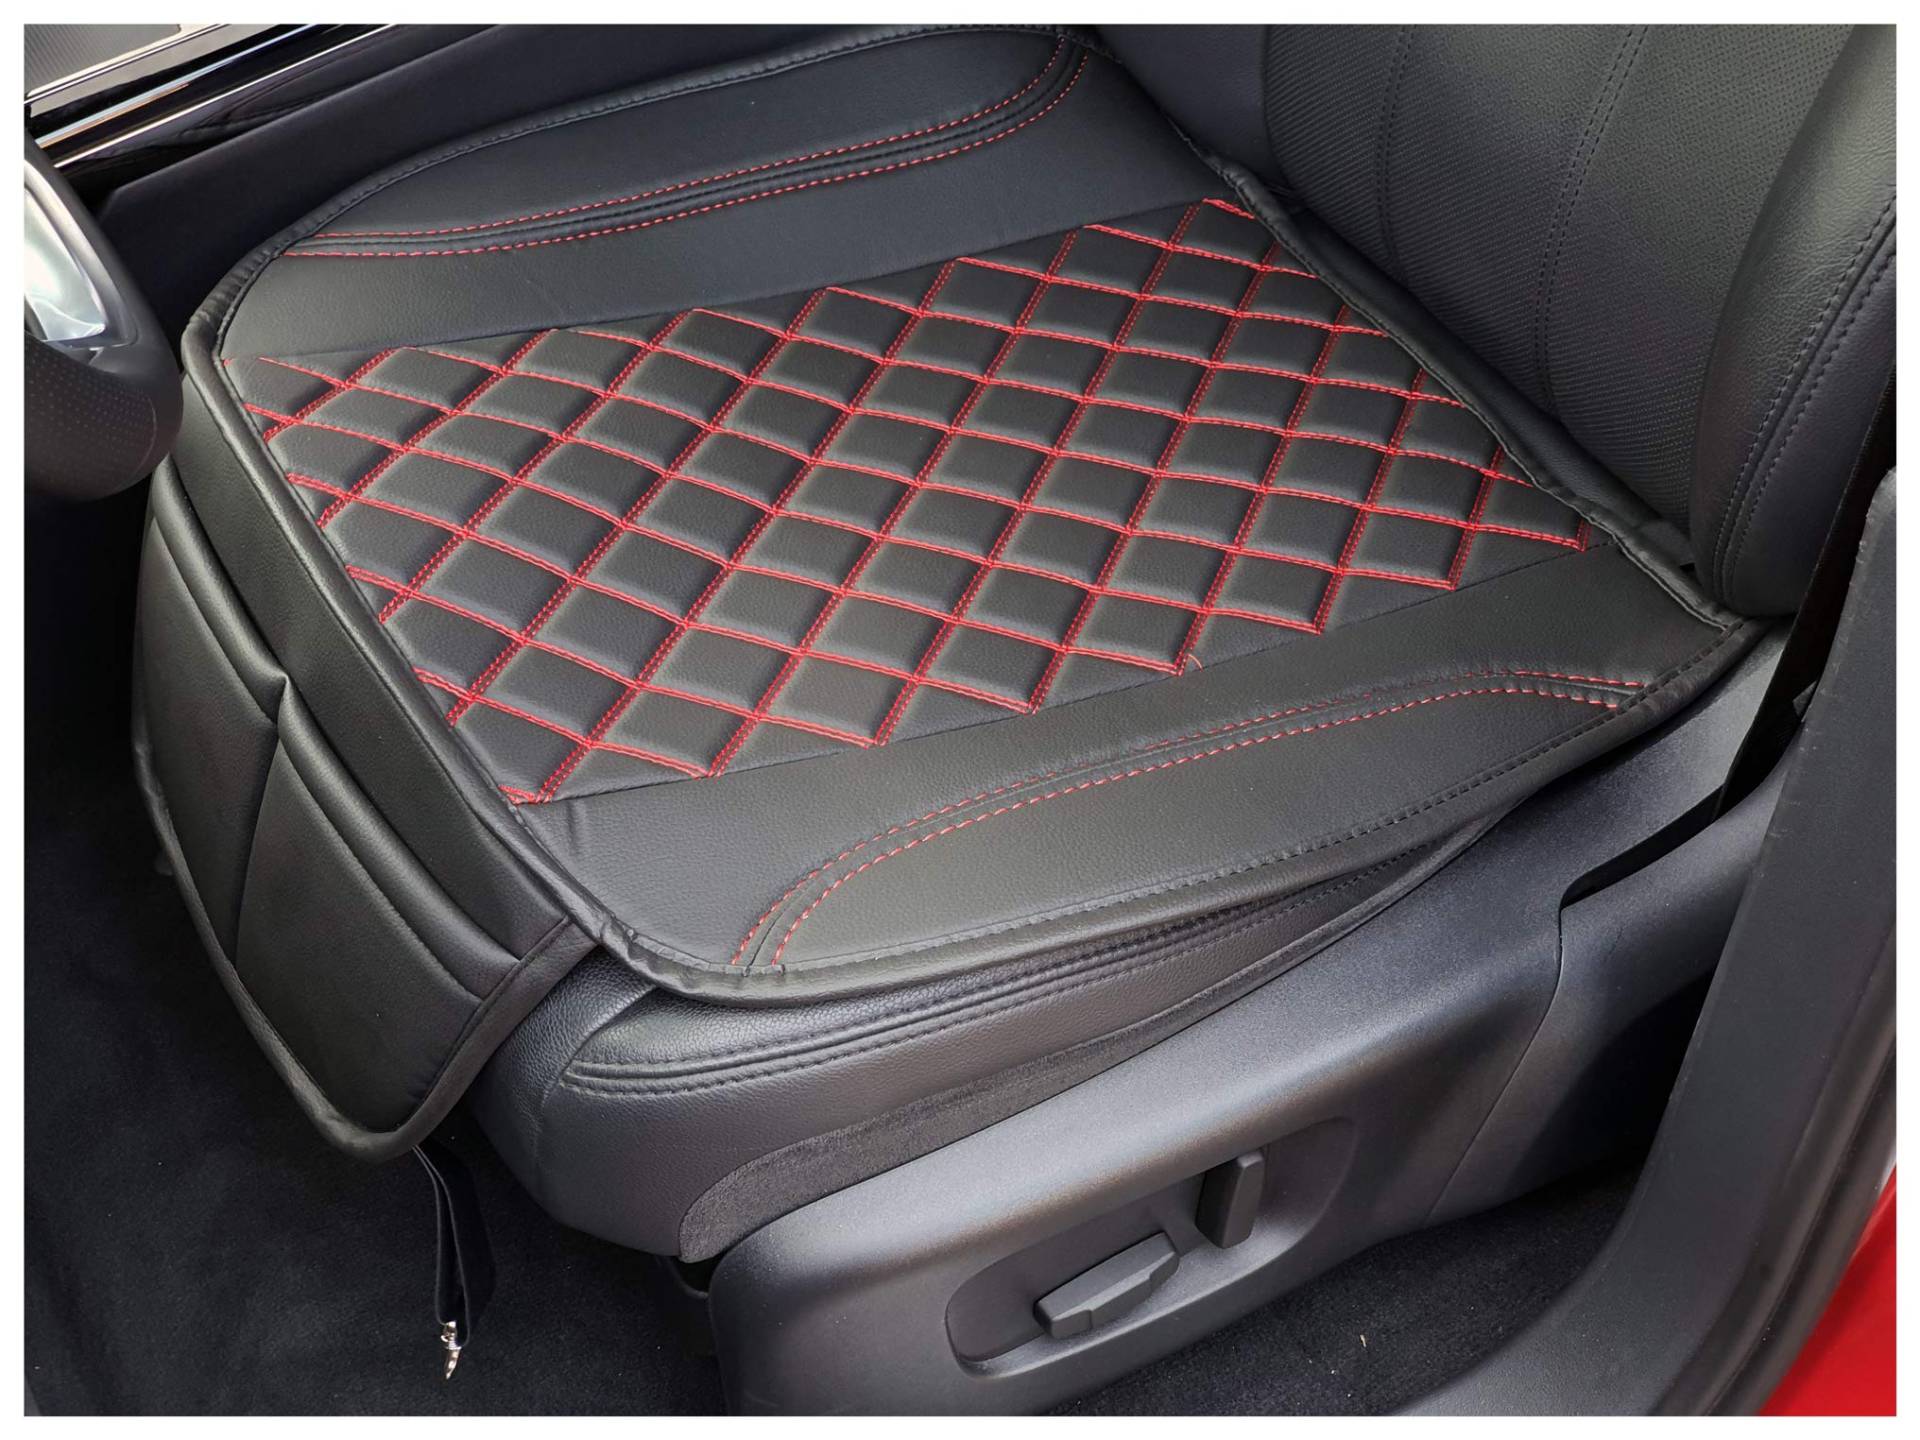 BREMER SITZBEZÜGE Sitzauflage Kunstleder Textilleder kompatibel mit Maserati Ghibli 3 Sitzkissen in Kunstleder Schwarz/Rote Naht OT402 von BREMER SITZBEZÜGE